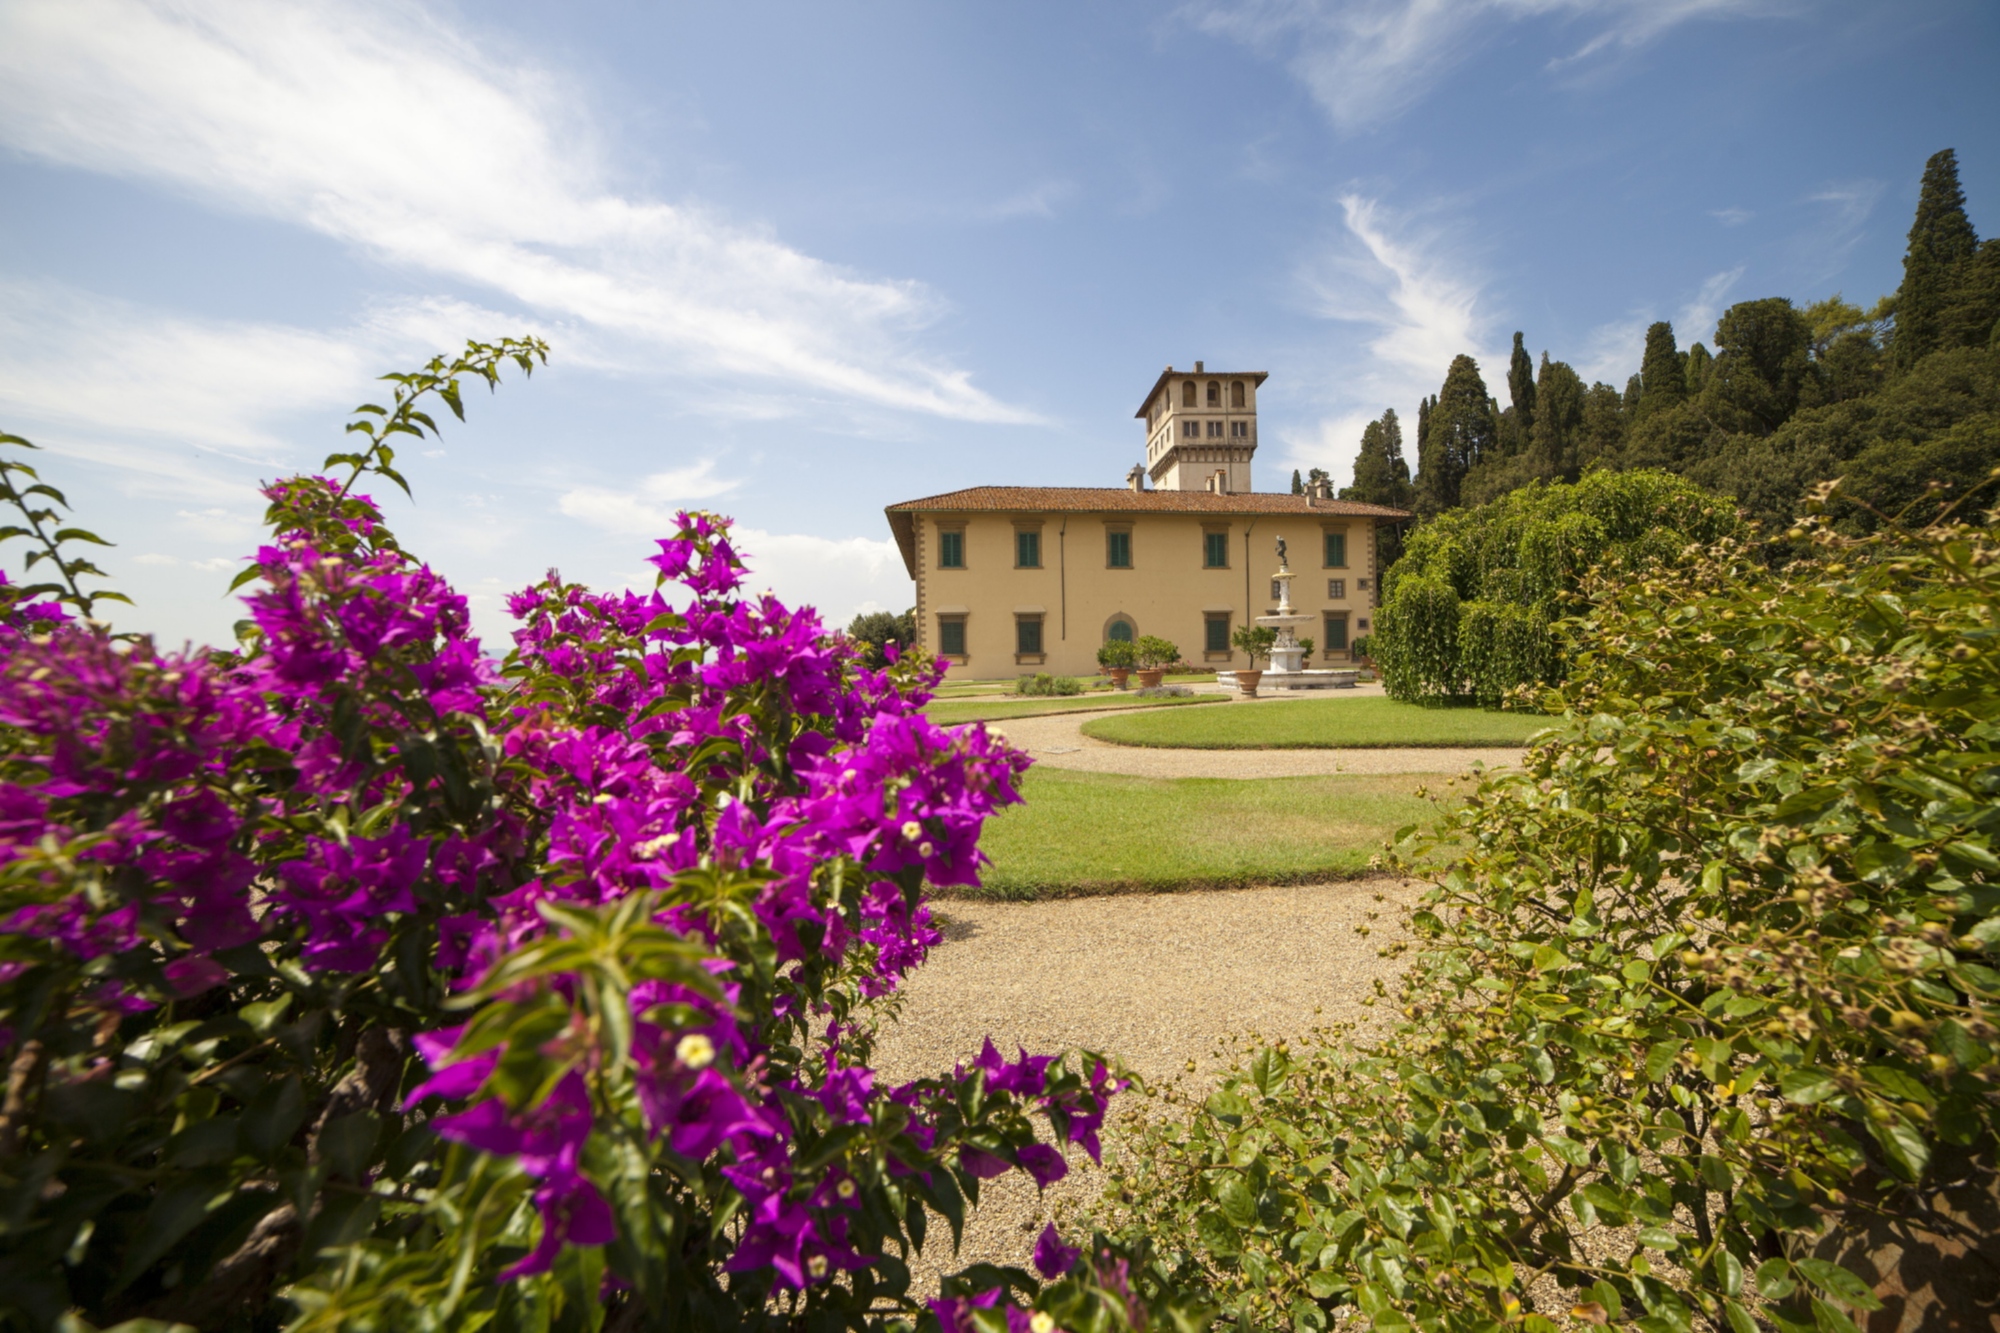 Medici Villa of Petraia